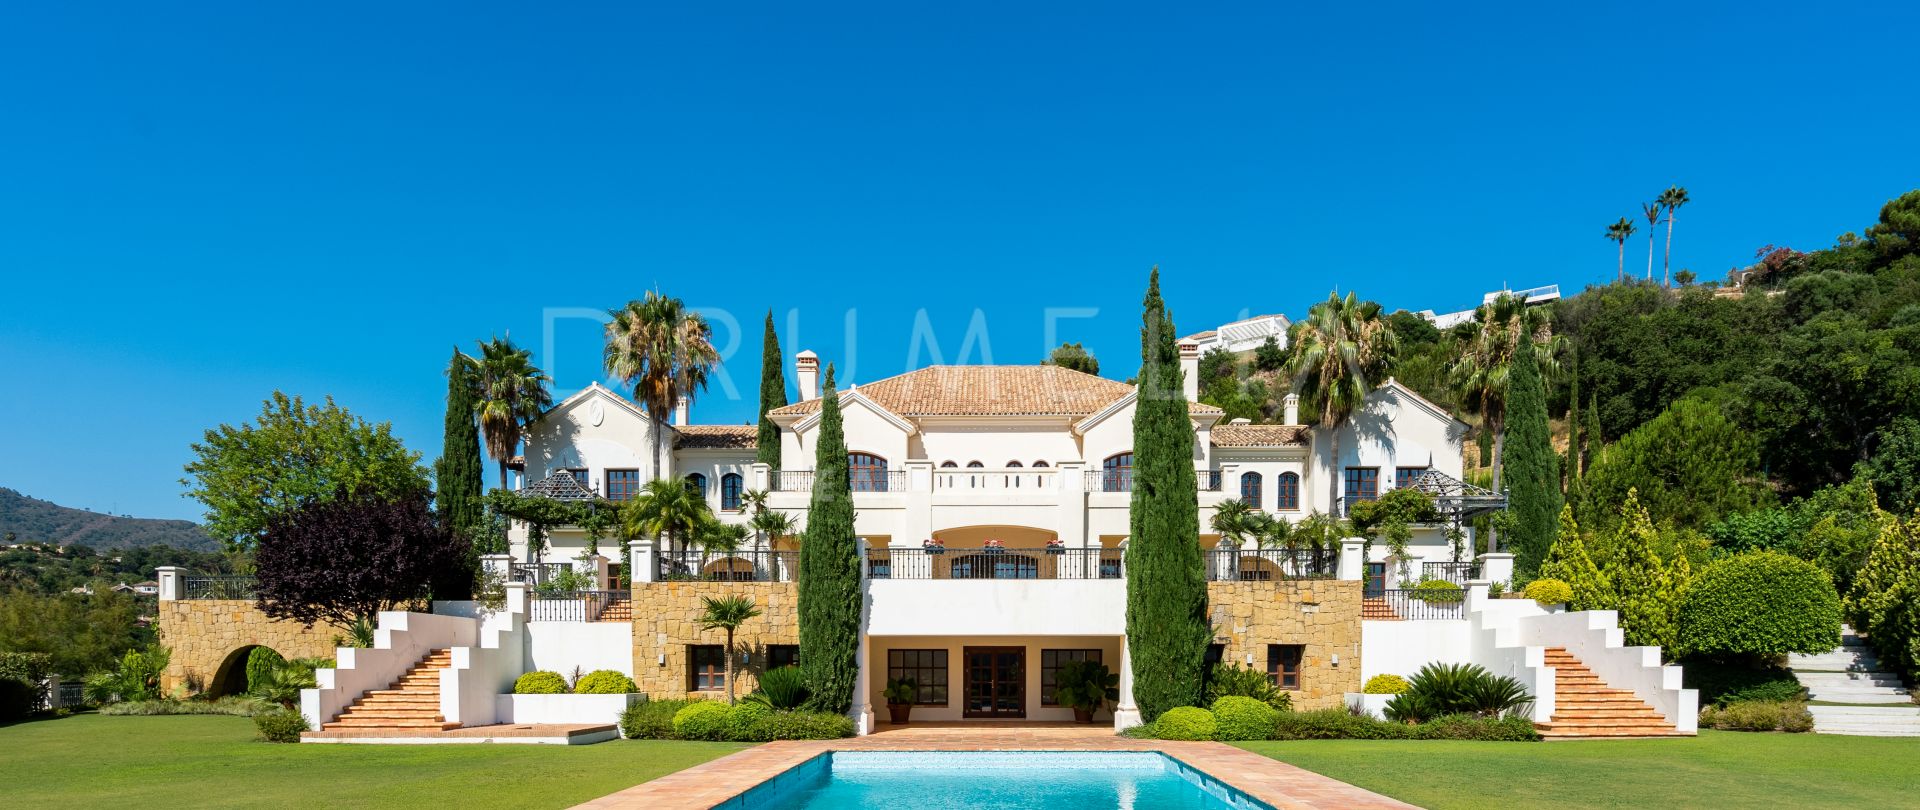 Uitzonderlijk luxe villa, perfect voor entertainment in La Zagaleta, Benahavis.